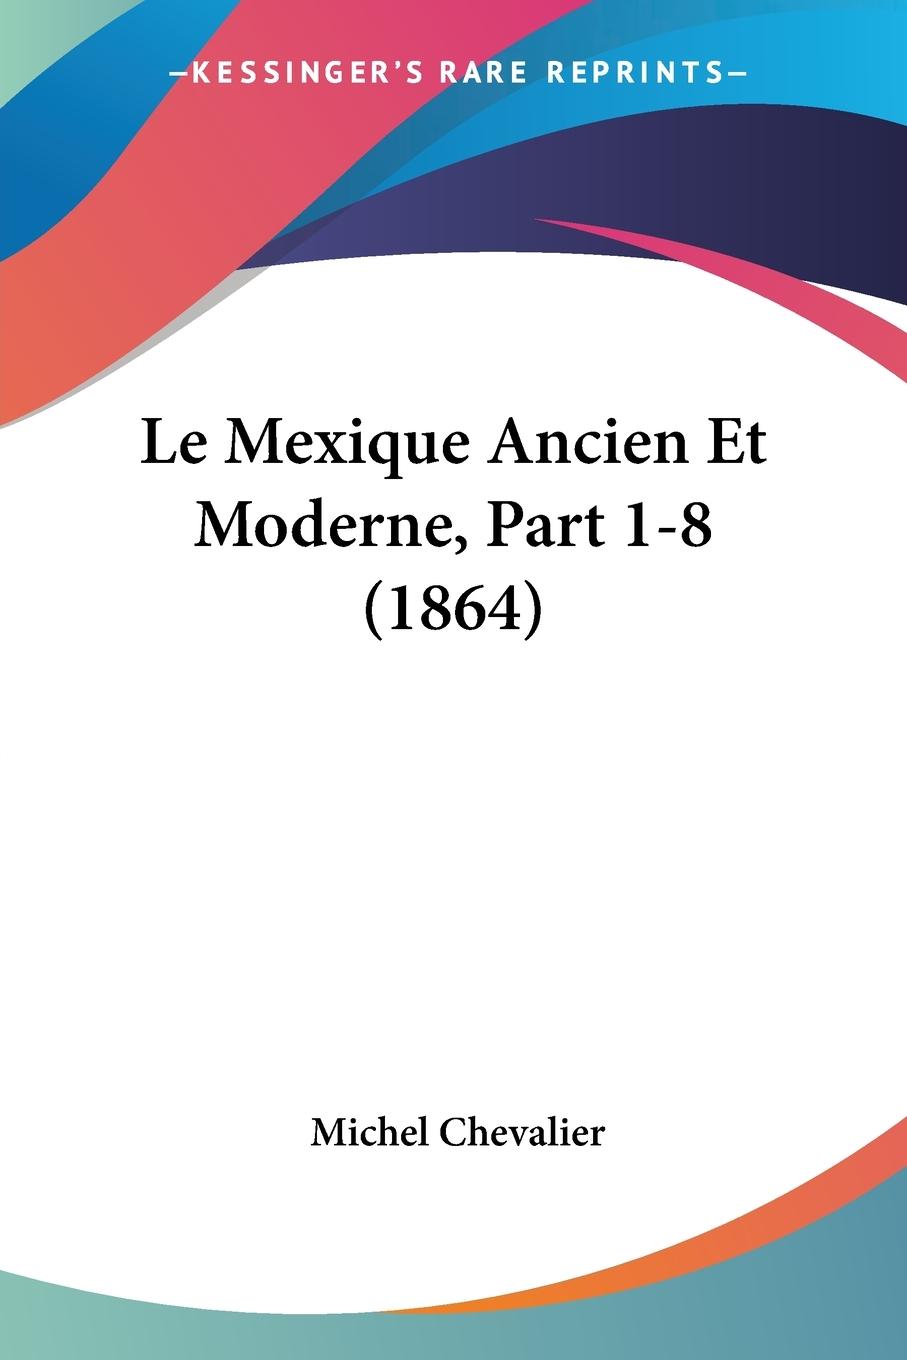 Le Mexique Ancien Et Moderne, Part 1-8 (1864) - Chevalier, Michel